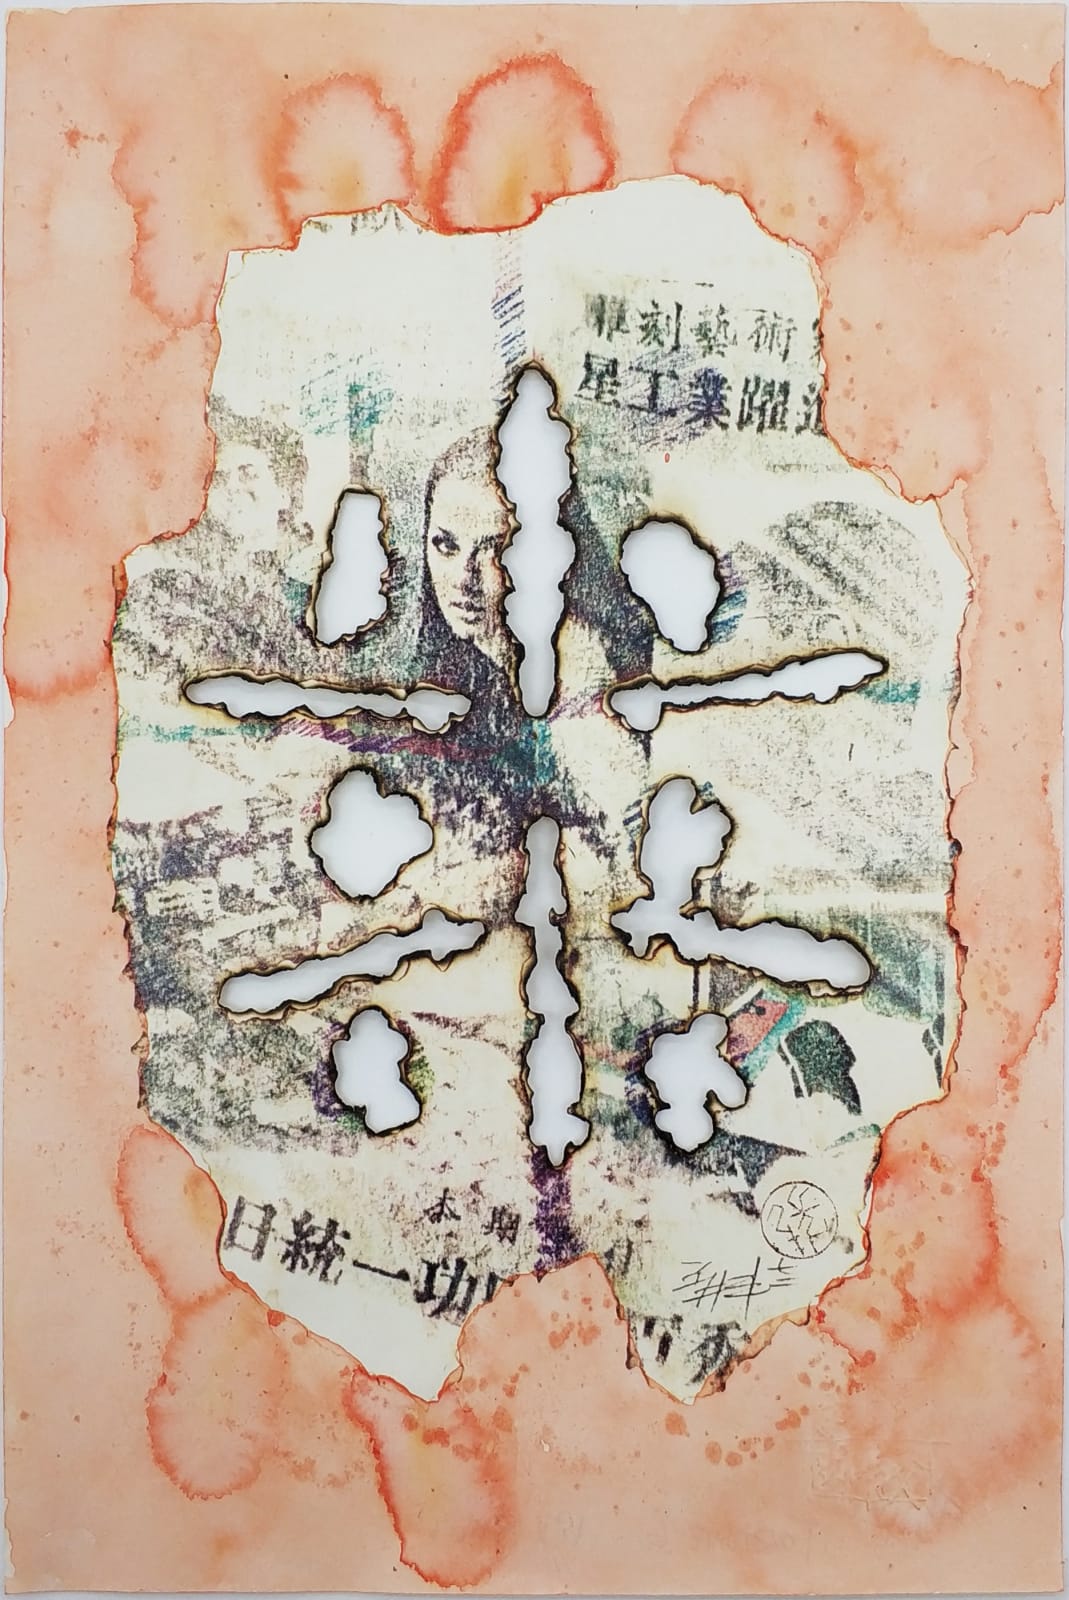 Cheung Yee 張義, Fortune 6 富六, 1972